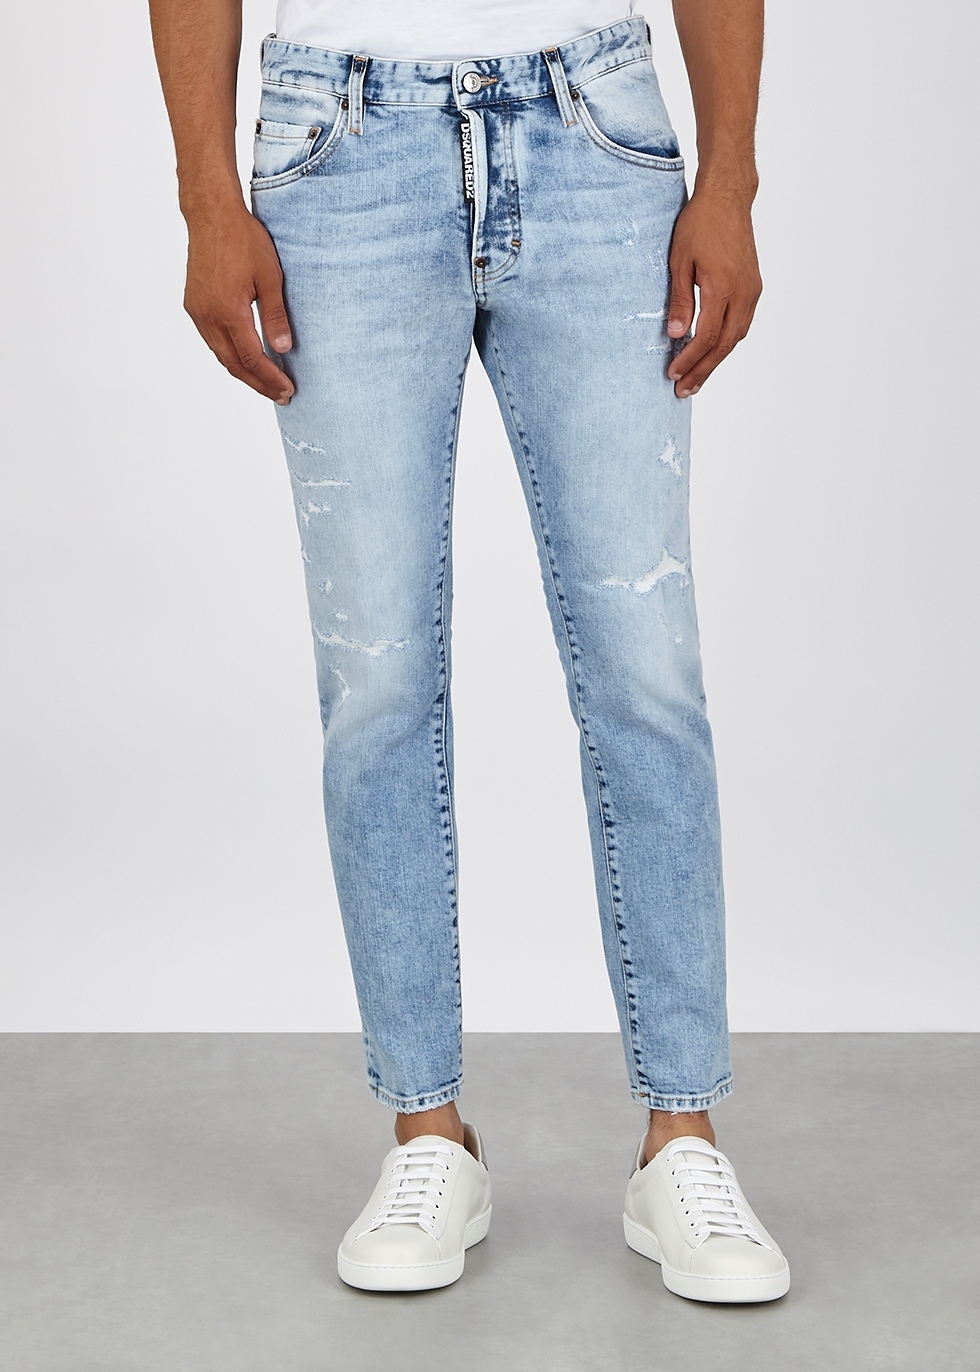 dsquared jeans harvey nichols